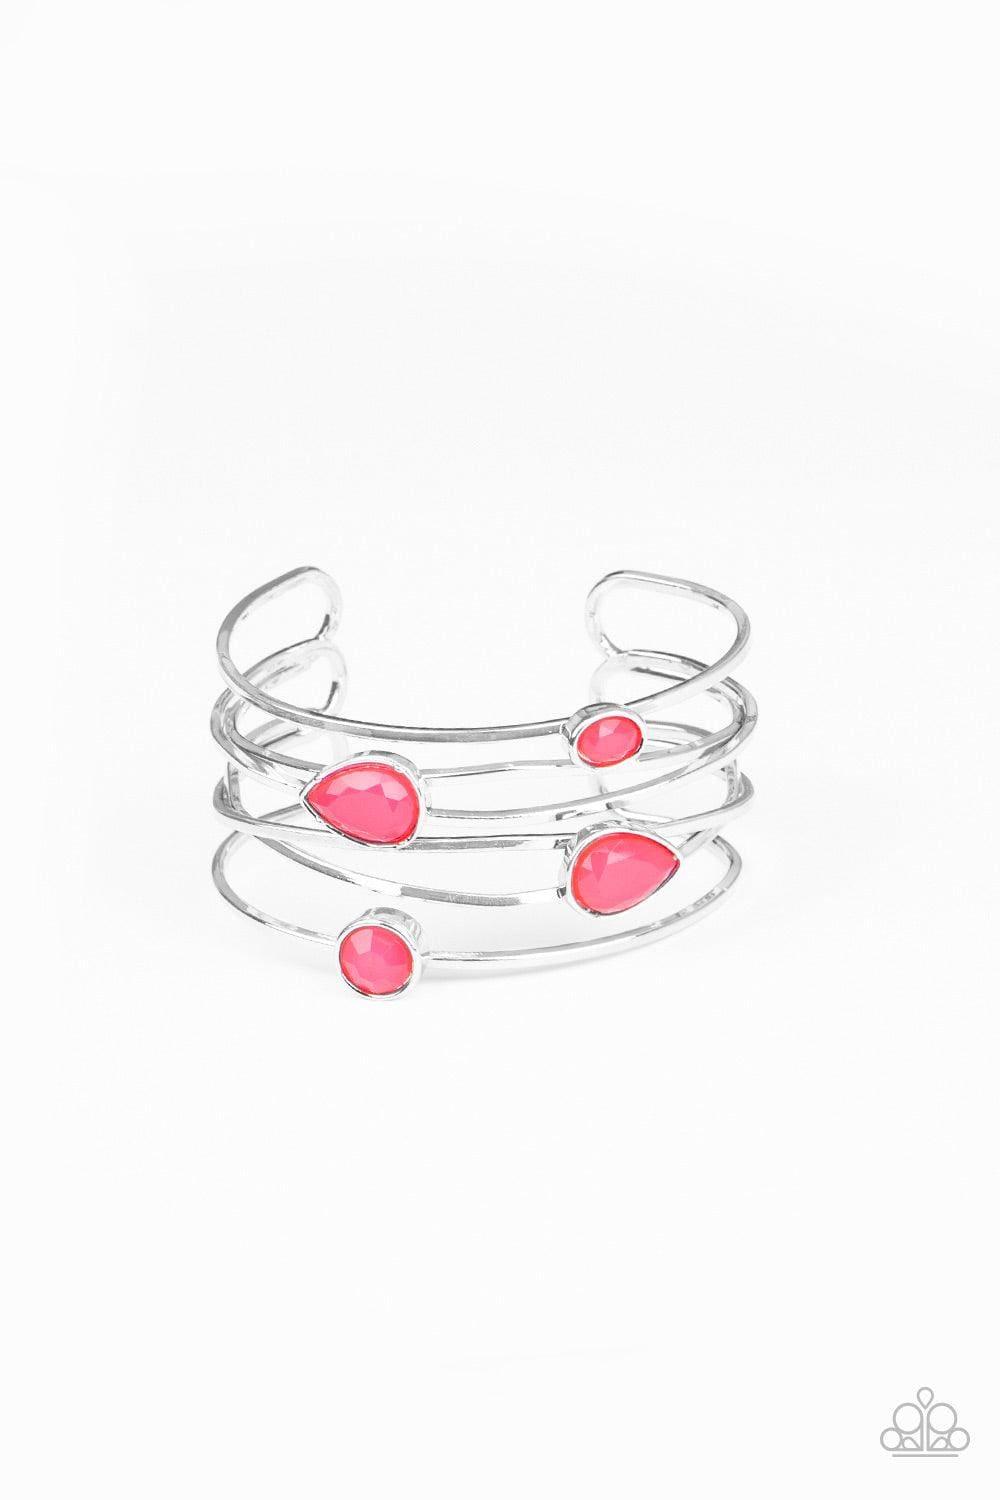 Paparazzi Accessories - Fashion Frenzy - Pink Bracelet - Bling by JessieK